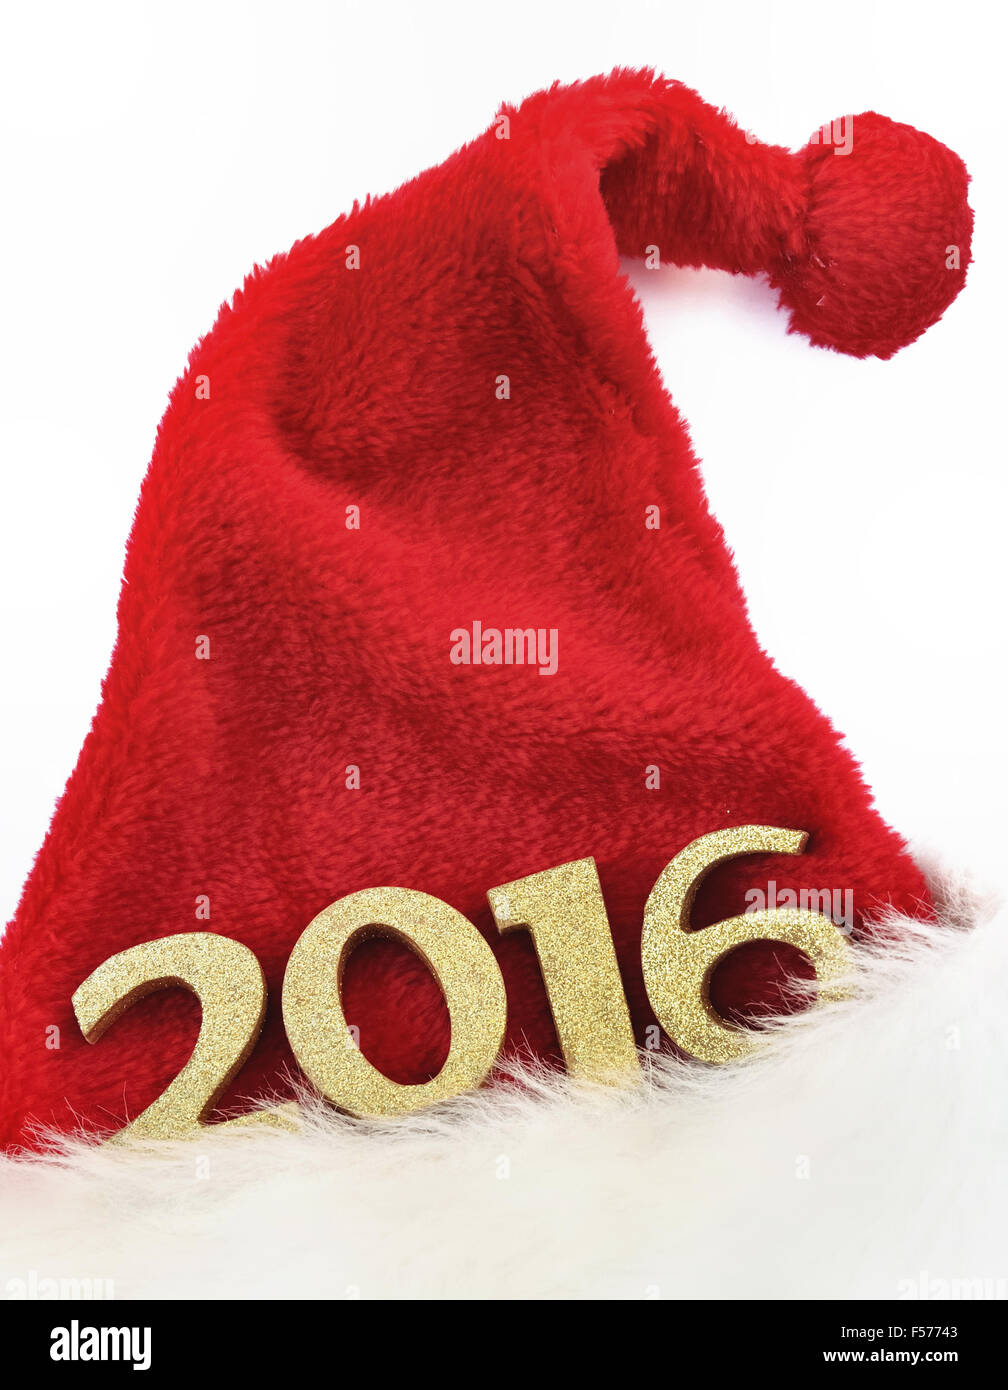 Les chiffres d'or 2016 sur un santa claus hat sur fond blanc Banque D'Images